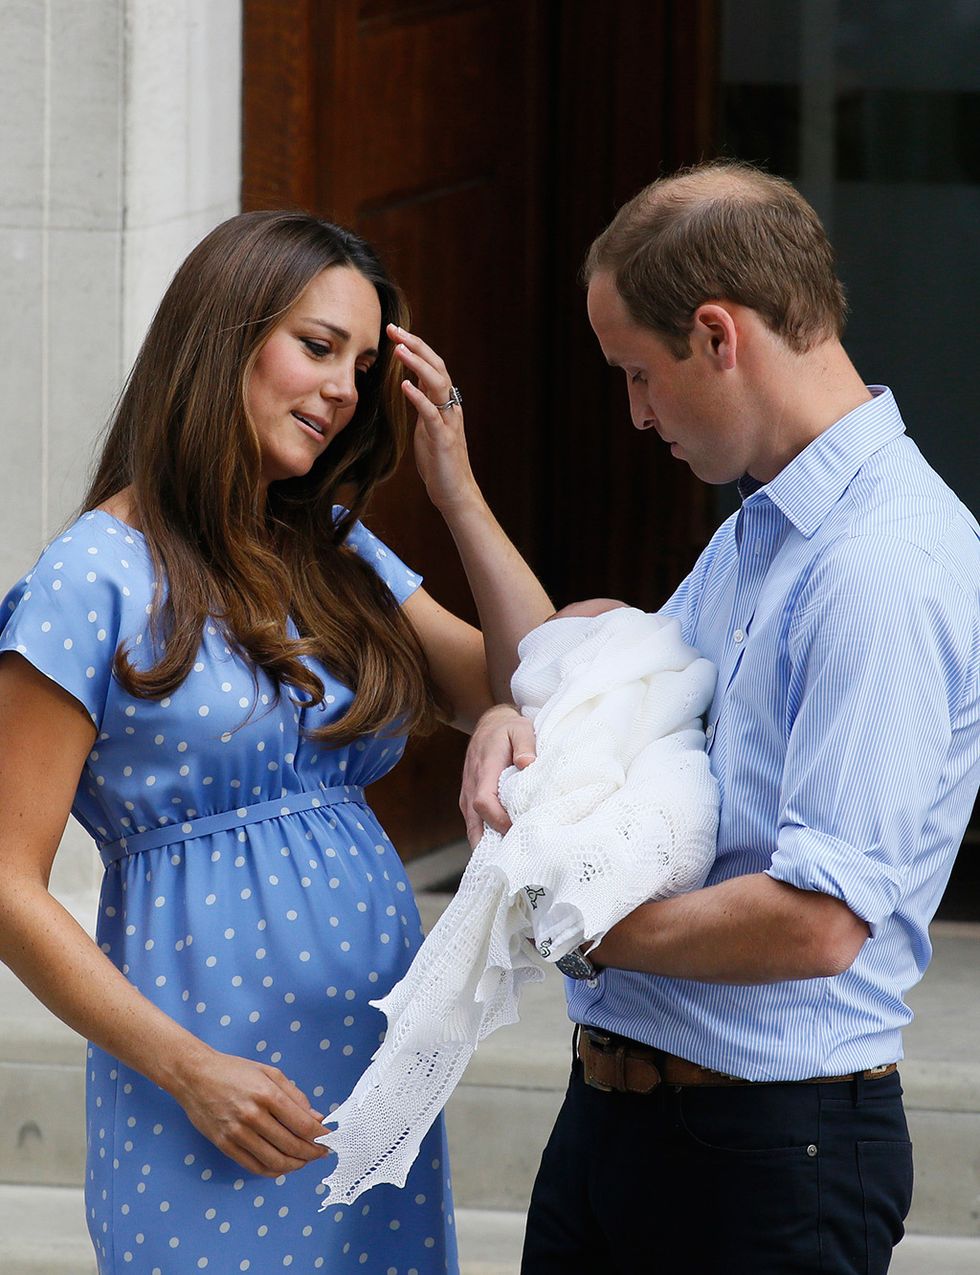 <p>Por extraño que parezca, imágenes como la de <strong>Kate Middleton</strong>, duquesa de Cambridge, tras dar a luz a su primer hijo, no son lo habitual entre las 'celebrities'. Por eso, su cuerpo postparto acaparó portadas al mostrarse así de natural un día después del parto del príncipe George.</p>